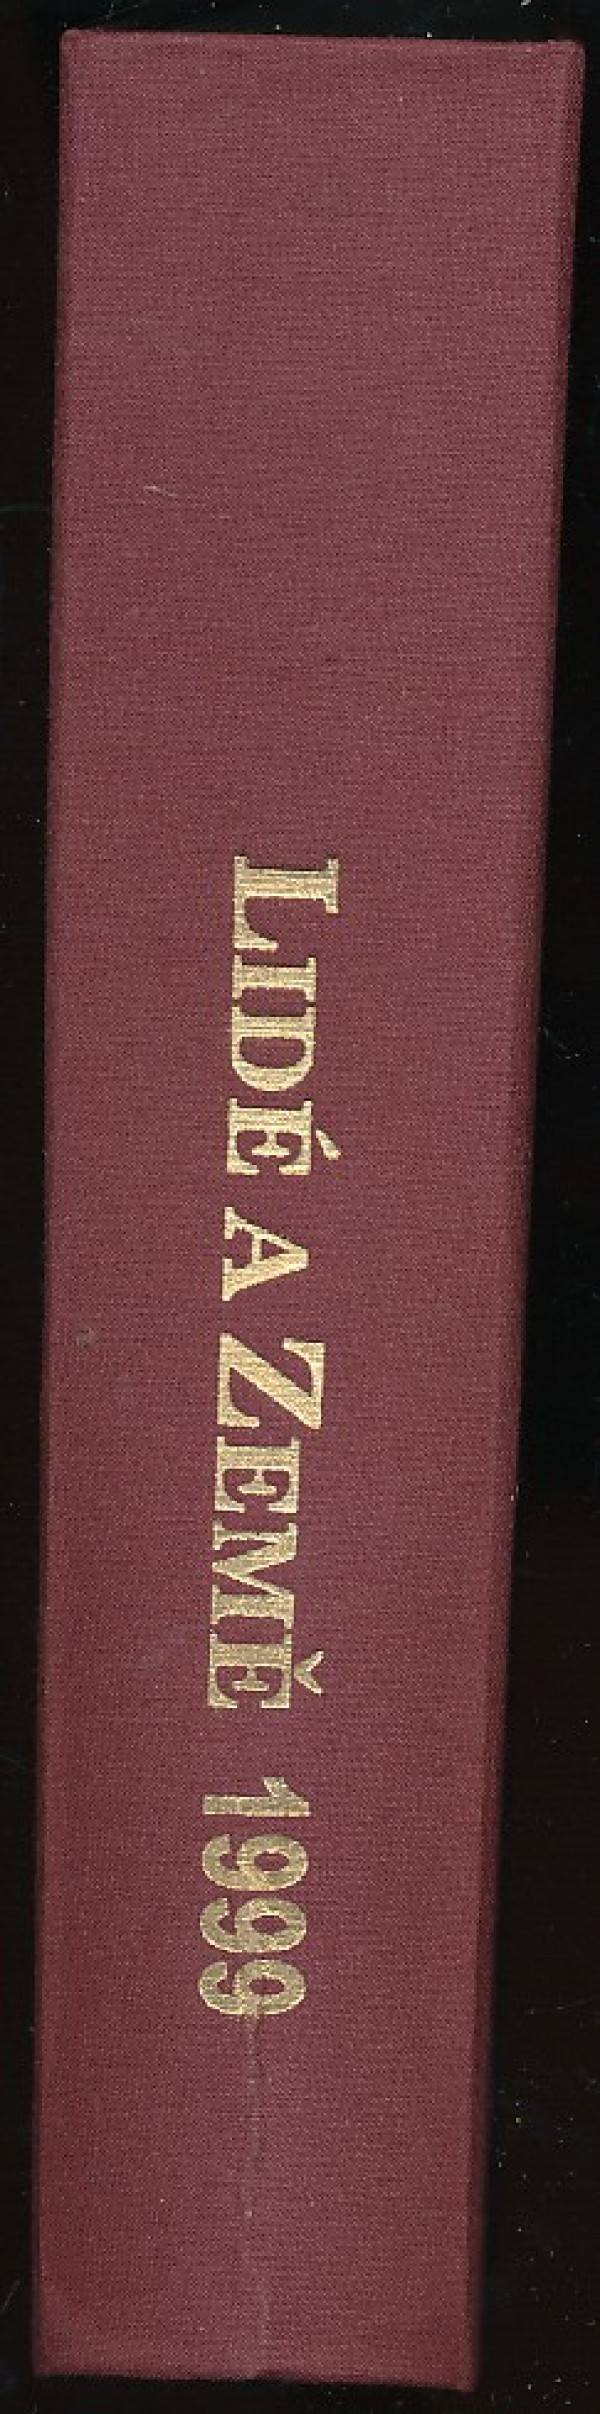 LIDÉ A ZEMĚ 1999 - ROČNÍK 48.